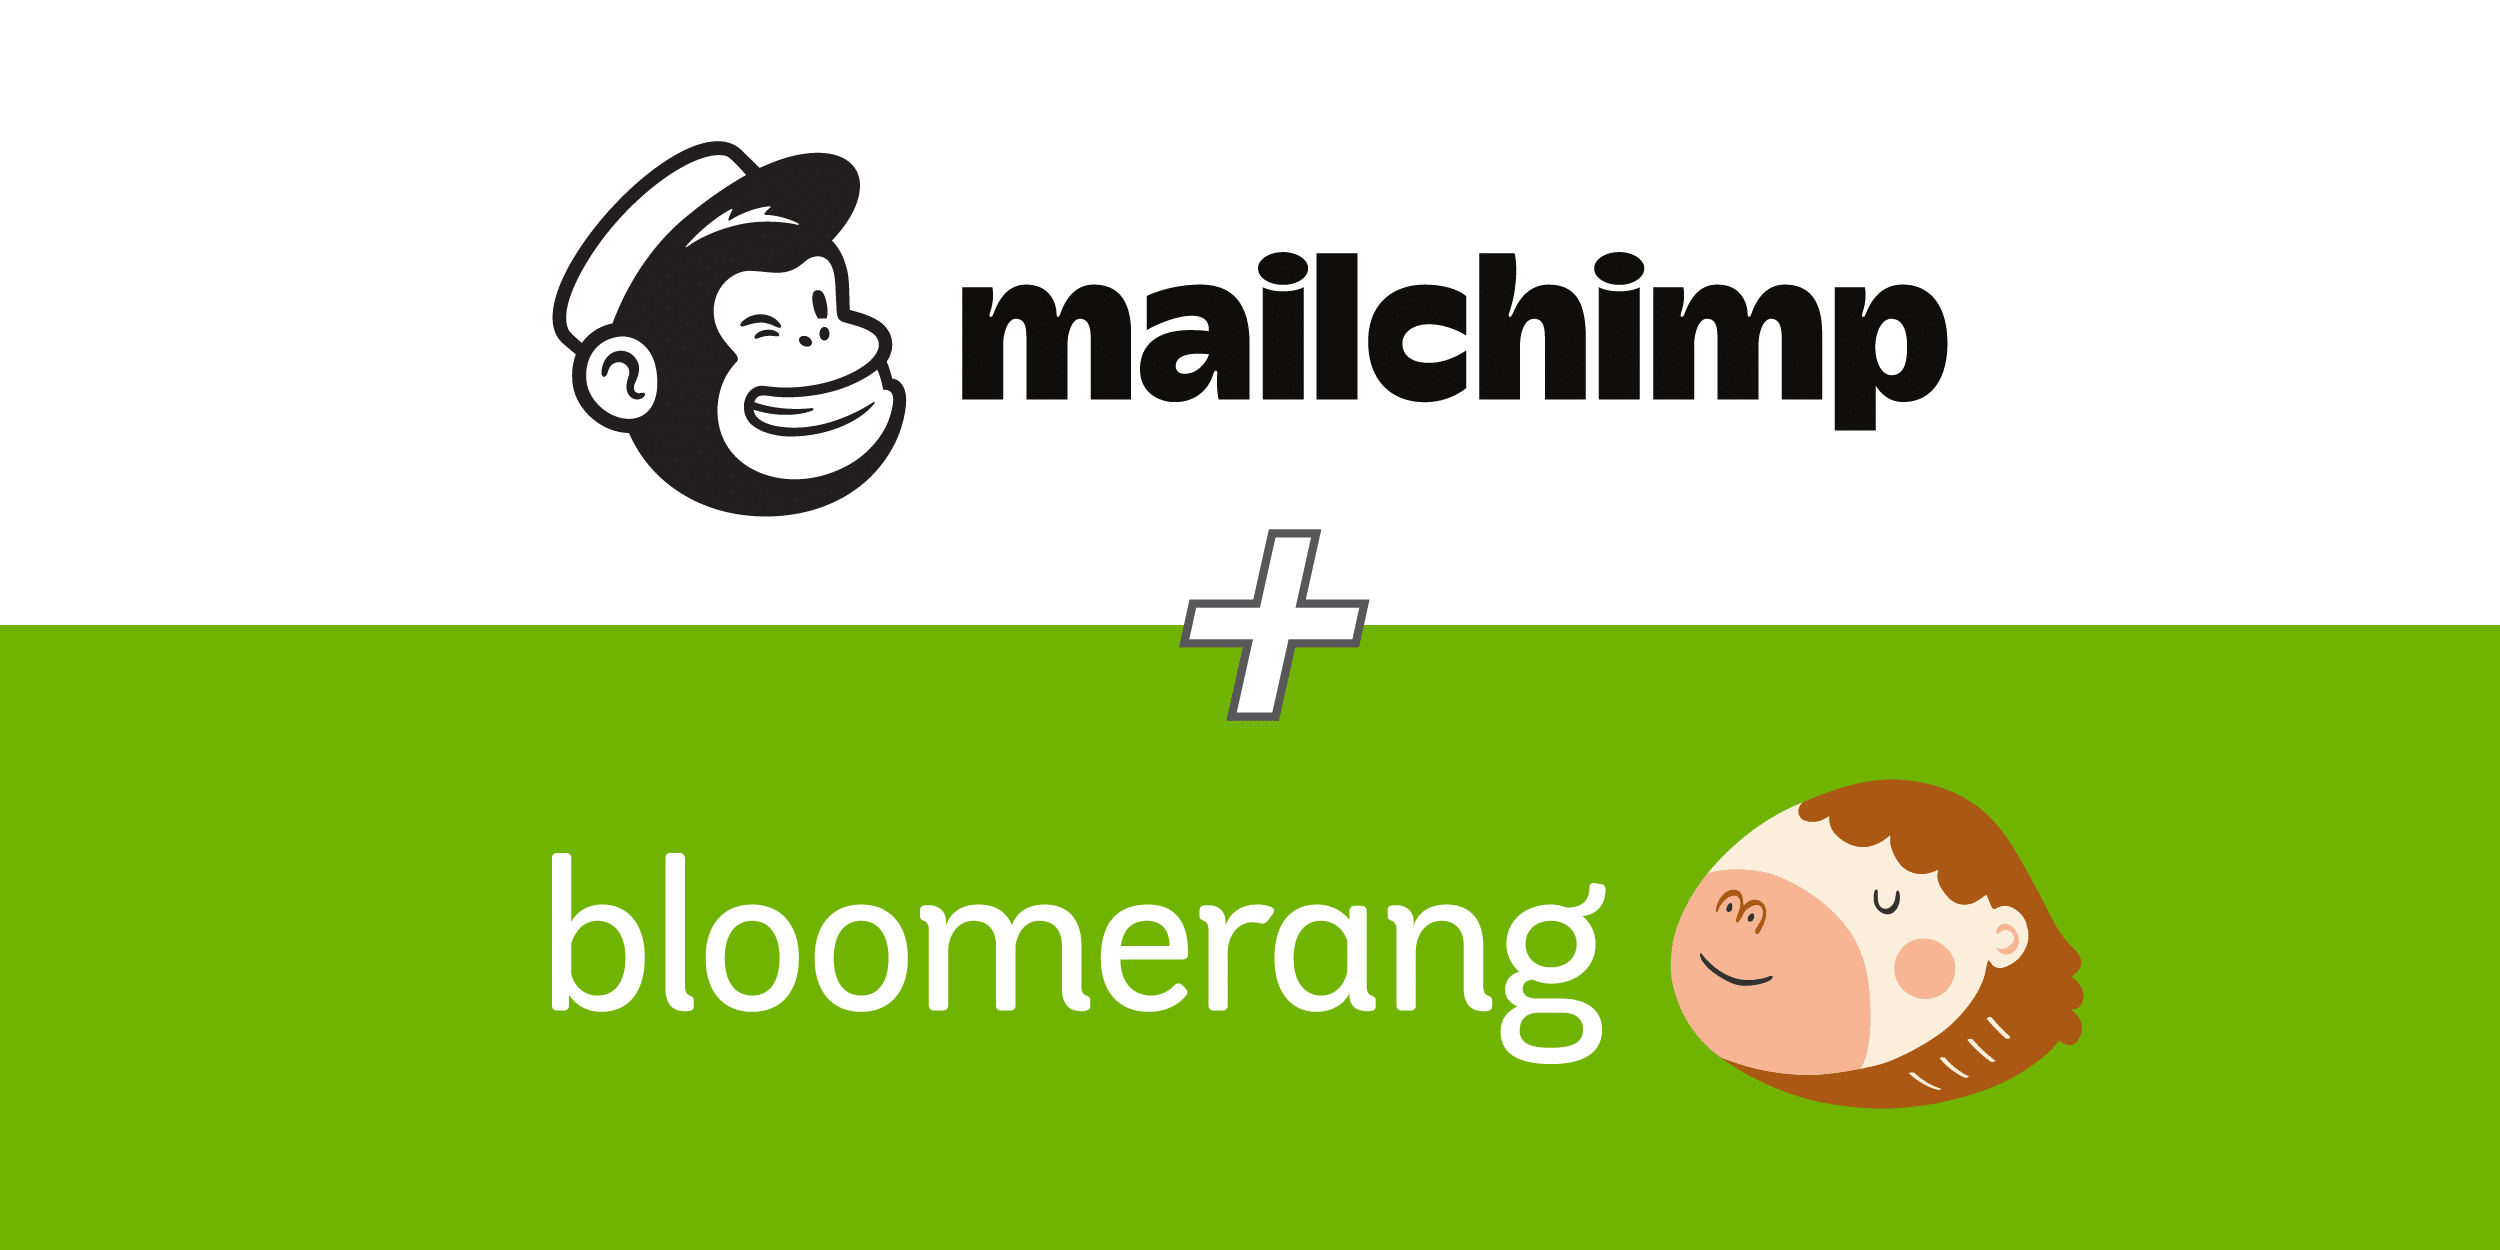 Mailchinmp + Bloomerang logos